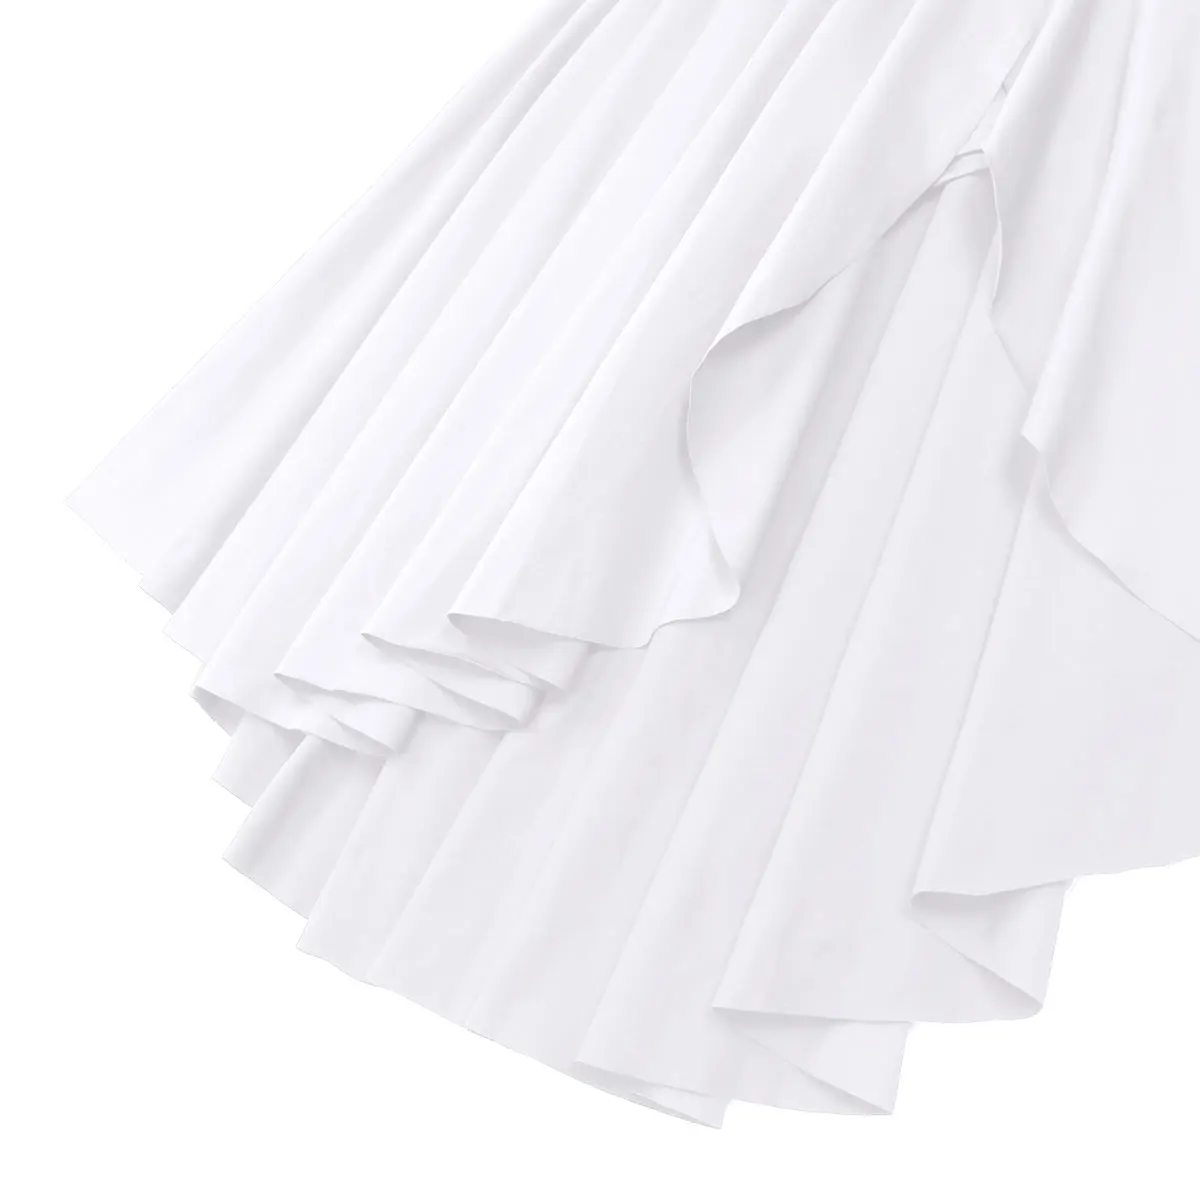 Женская Асимметричная одежда для лирических танцев iiniim, укороченный топ с открытой спиной и юбка, костюмы для латинских бальных танцев, Фигурное платье для катания на коньках